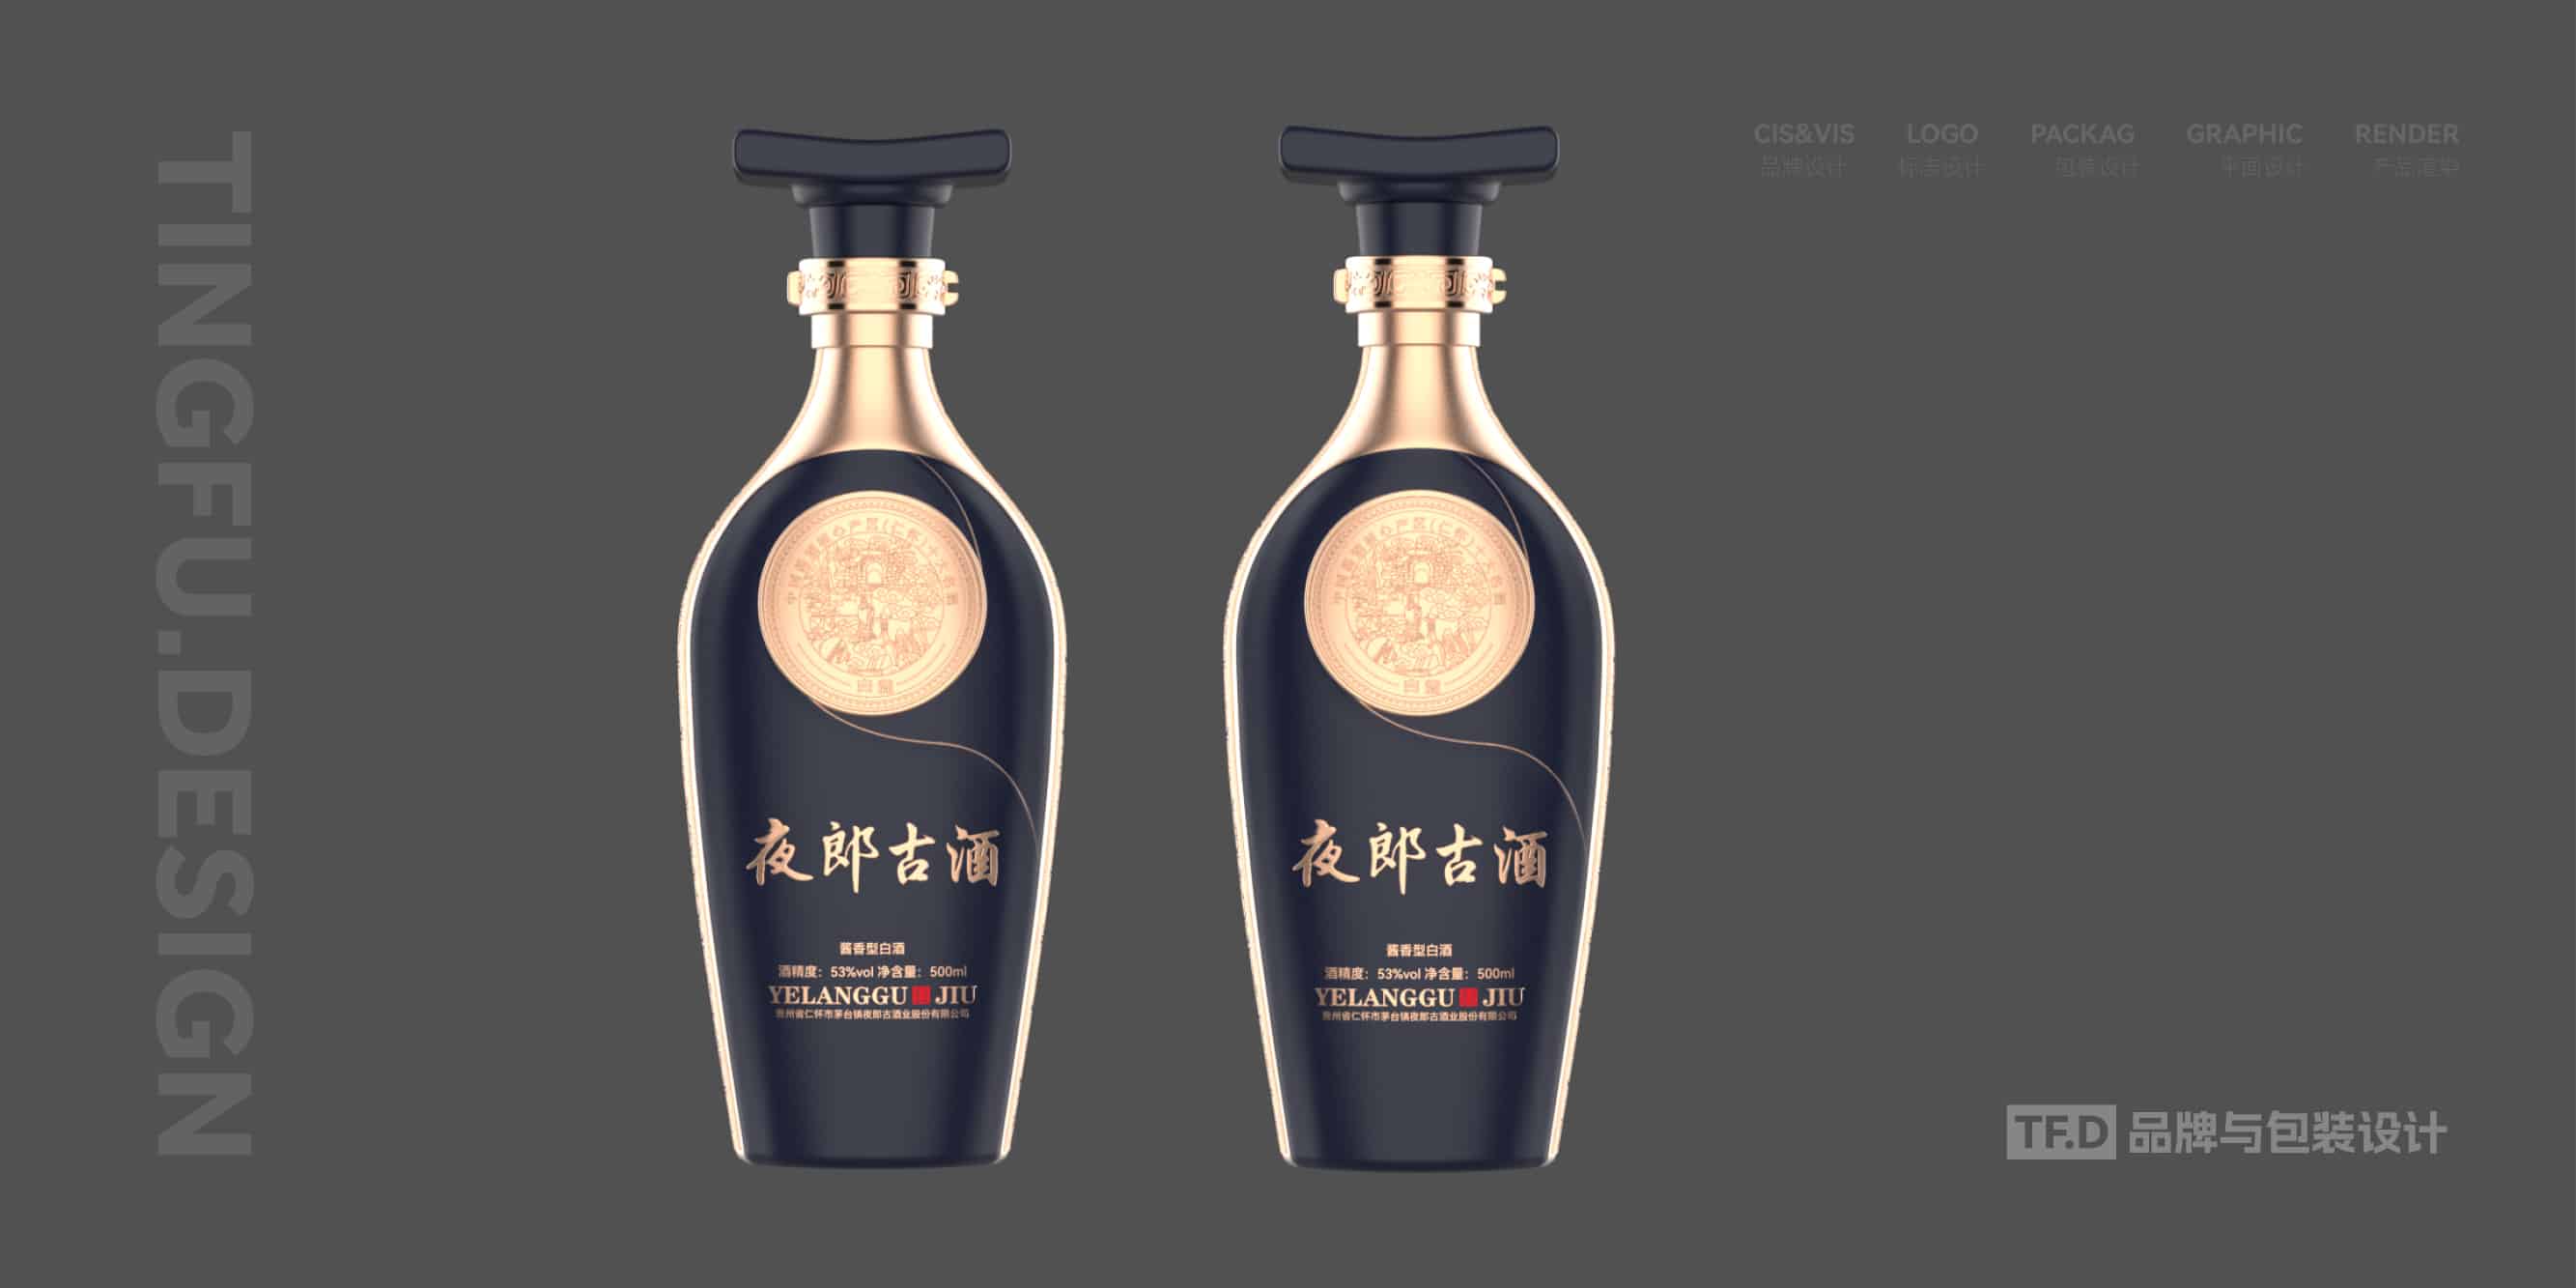 TFD品牌与包装设计-部分酒包装设计案例40-tuya.jpg